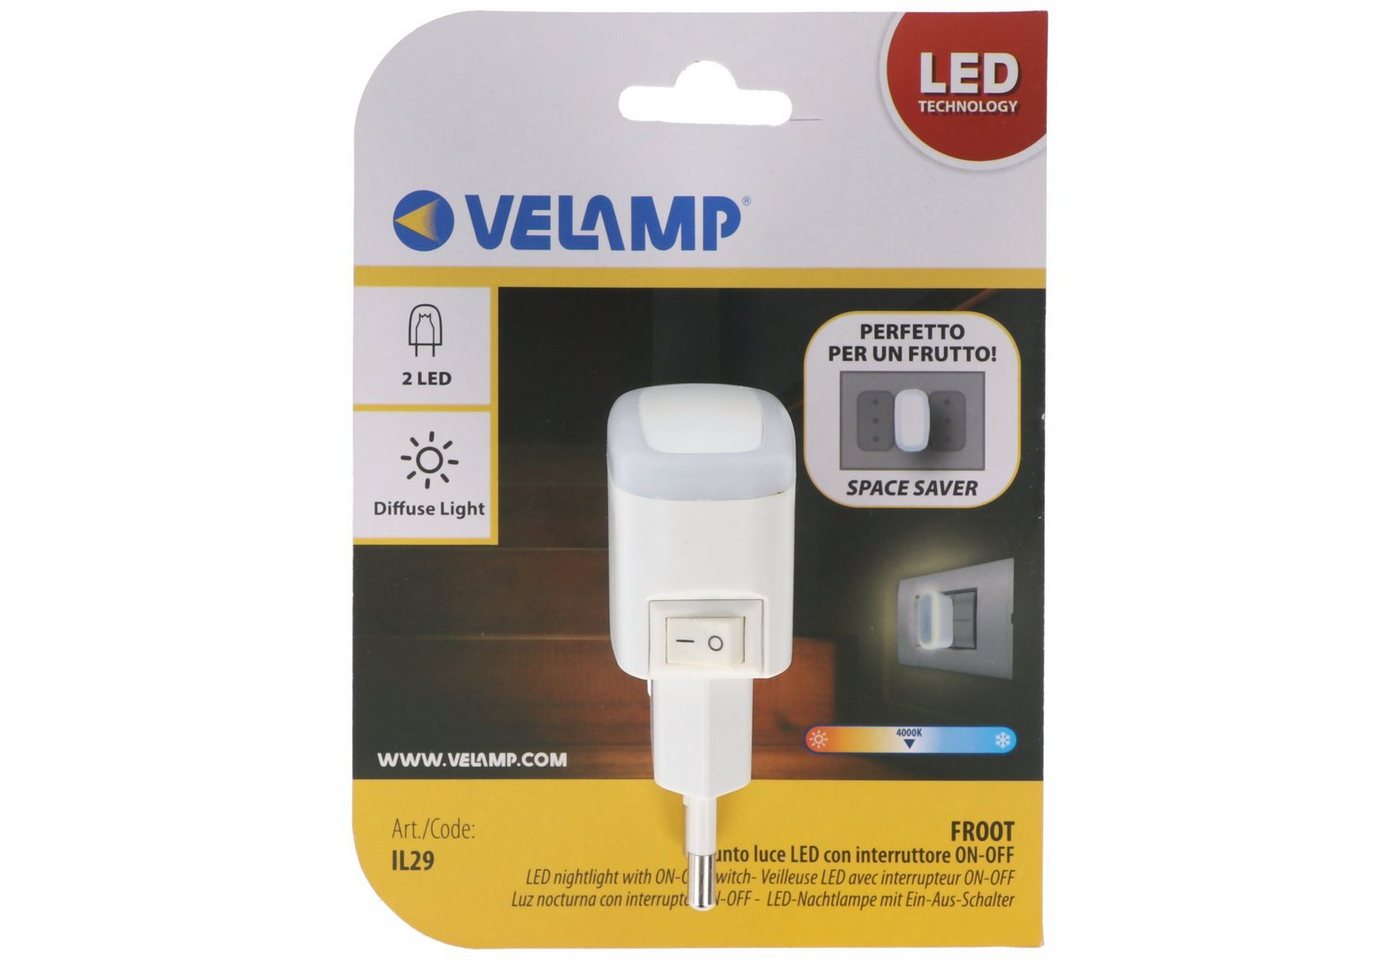 Velamp LED Nachtlicht Velamp FROOT, LED-Nachtlicht mit EIN/AUS-Schalter, extra kompakt, ver von Velamp